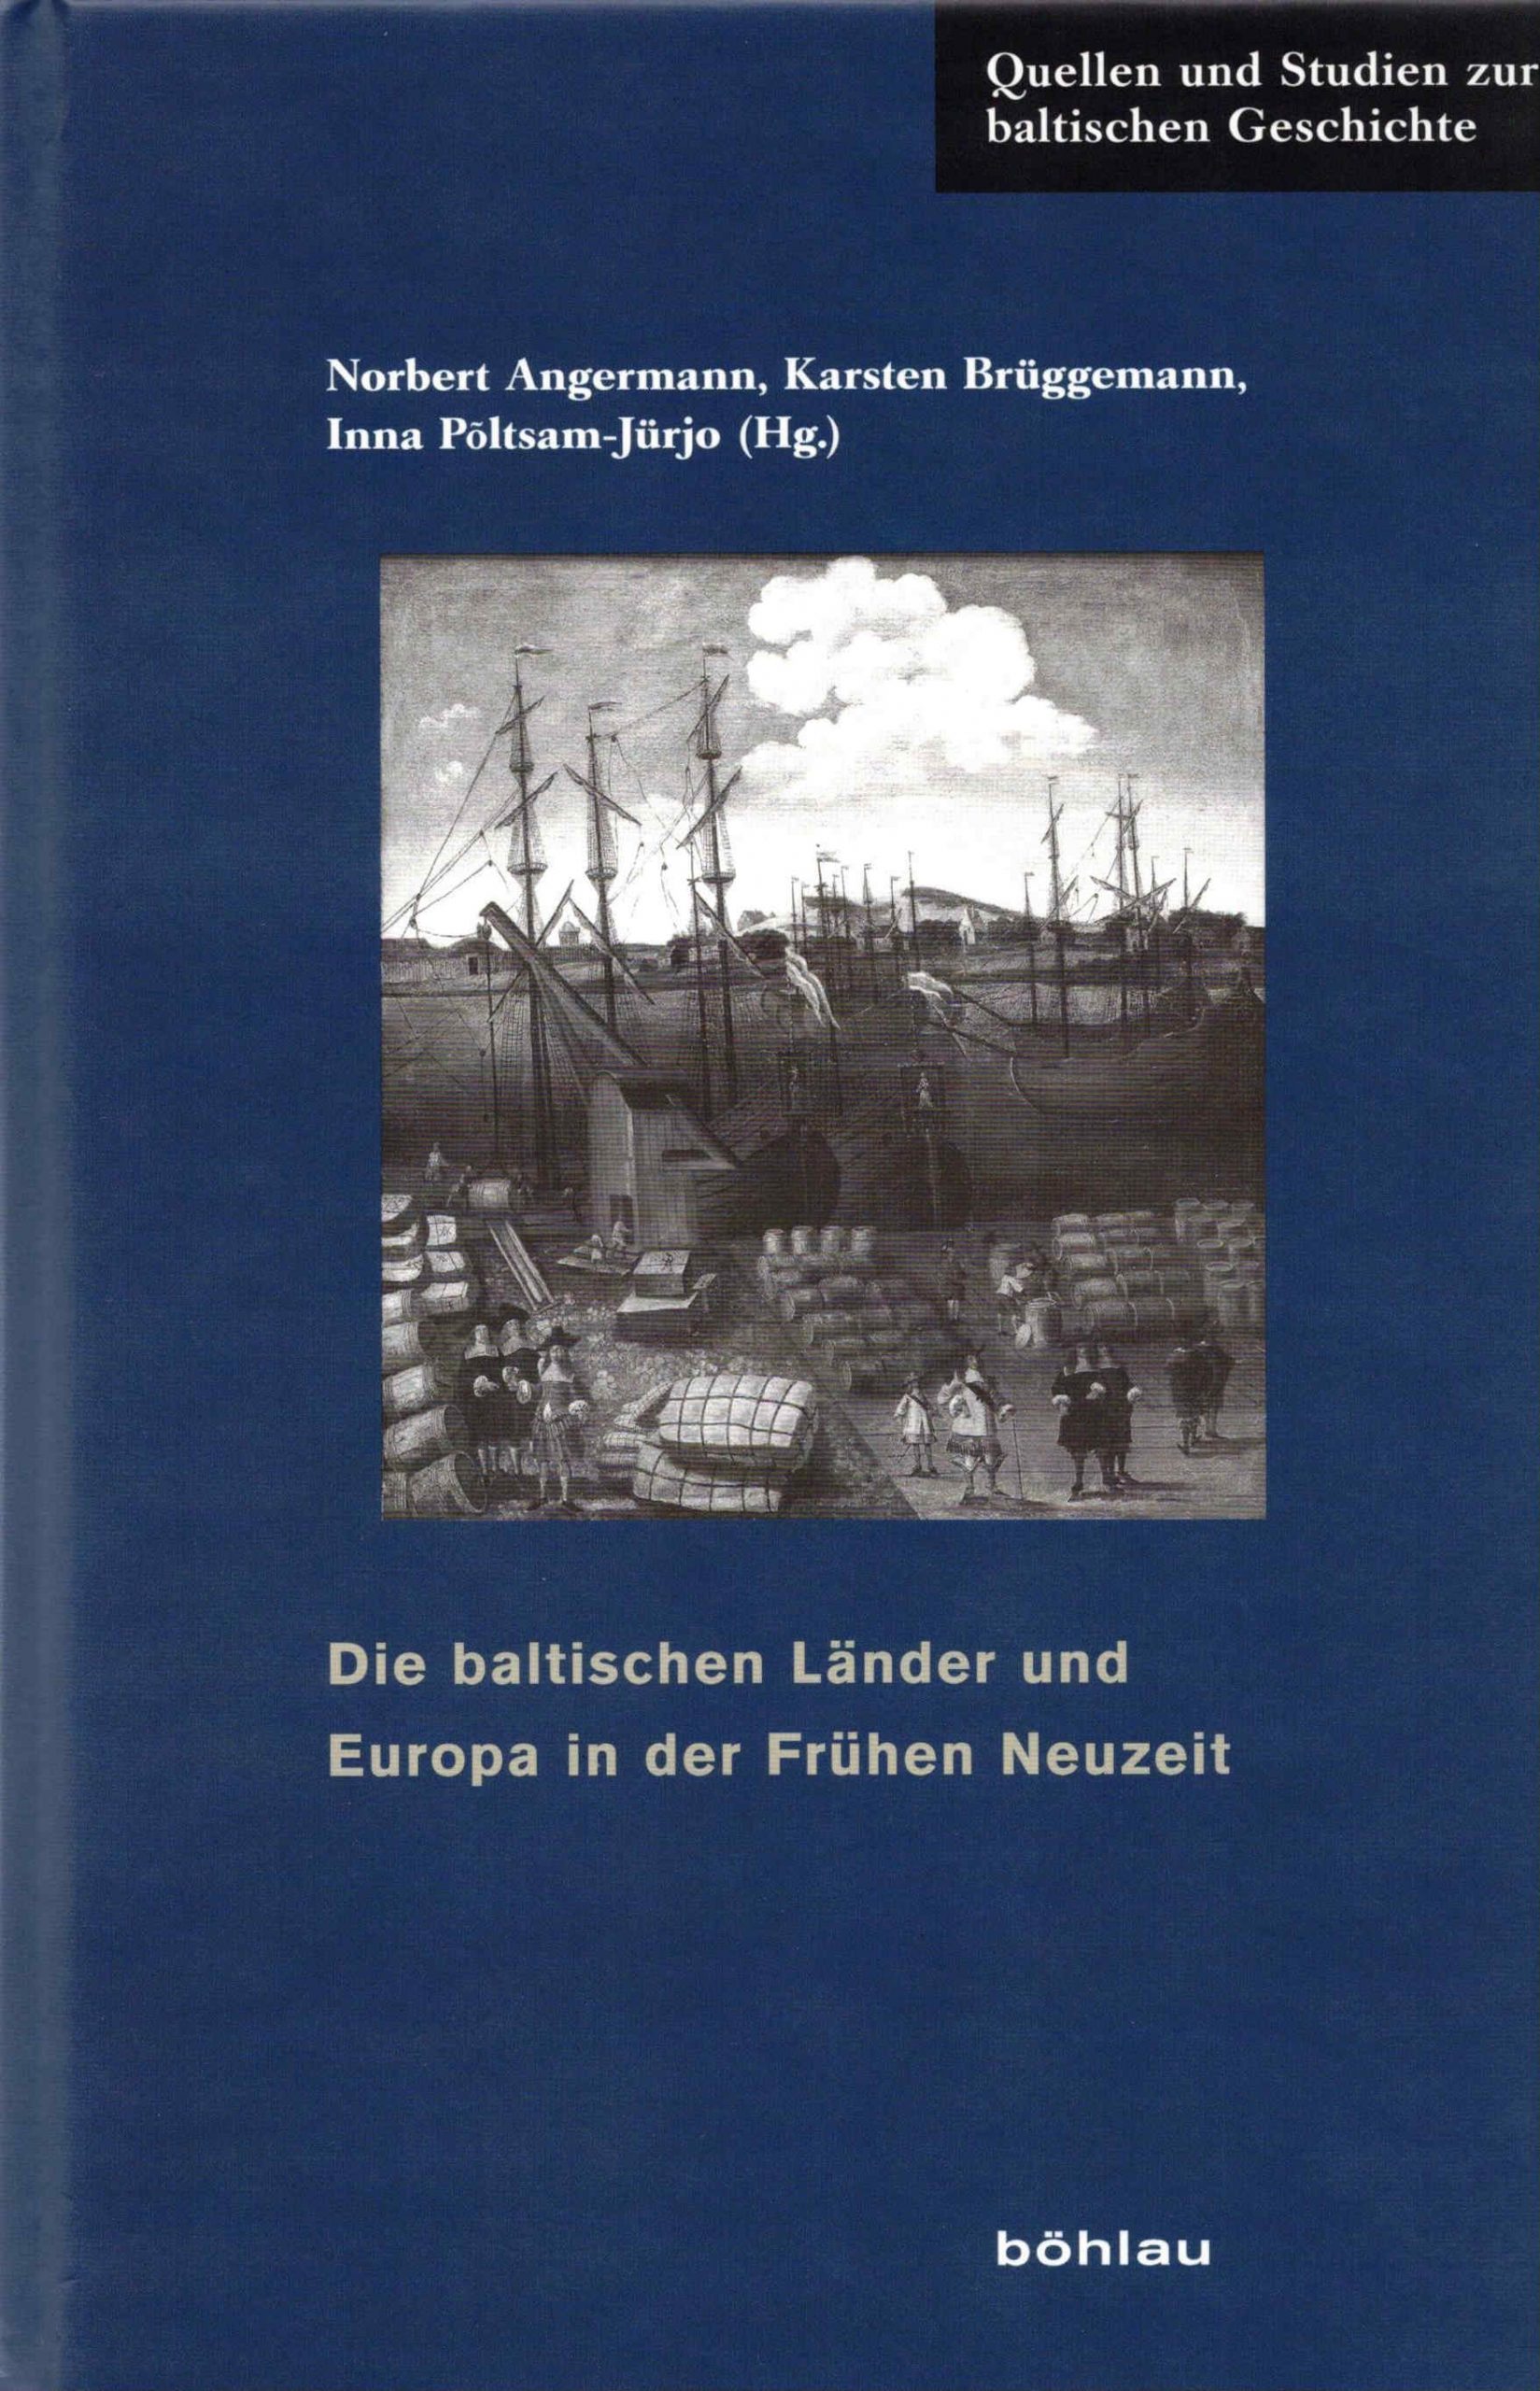 Quellen und Studien zur baltischen Geschichte, Band 26